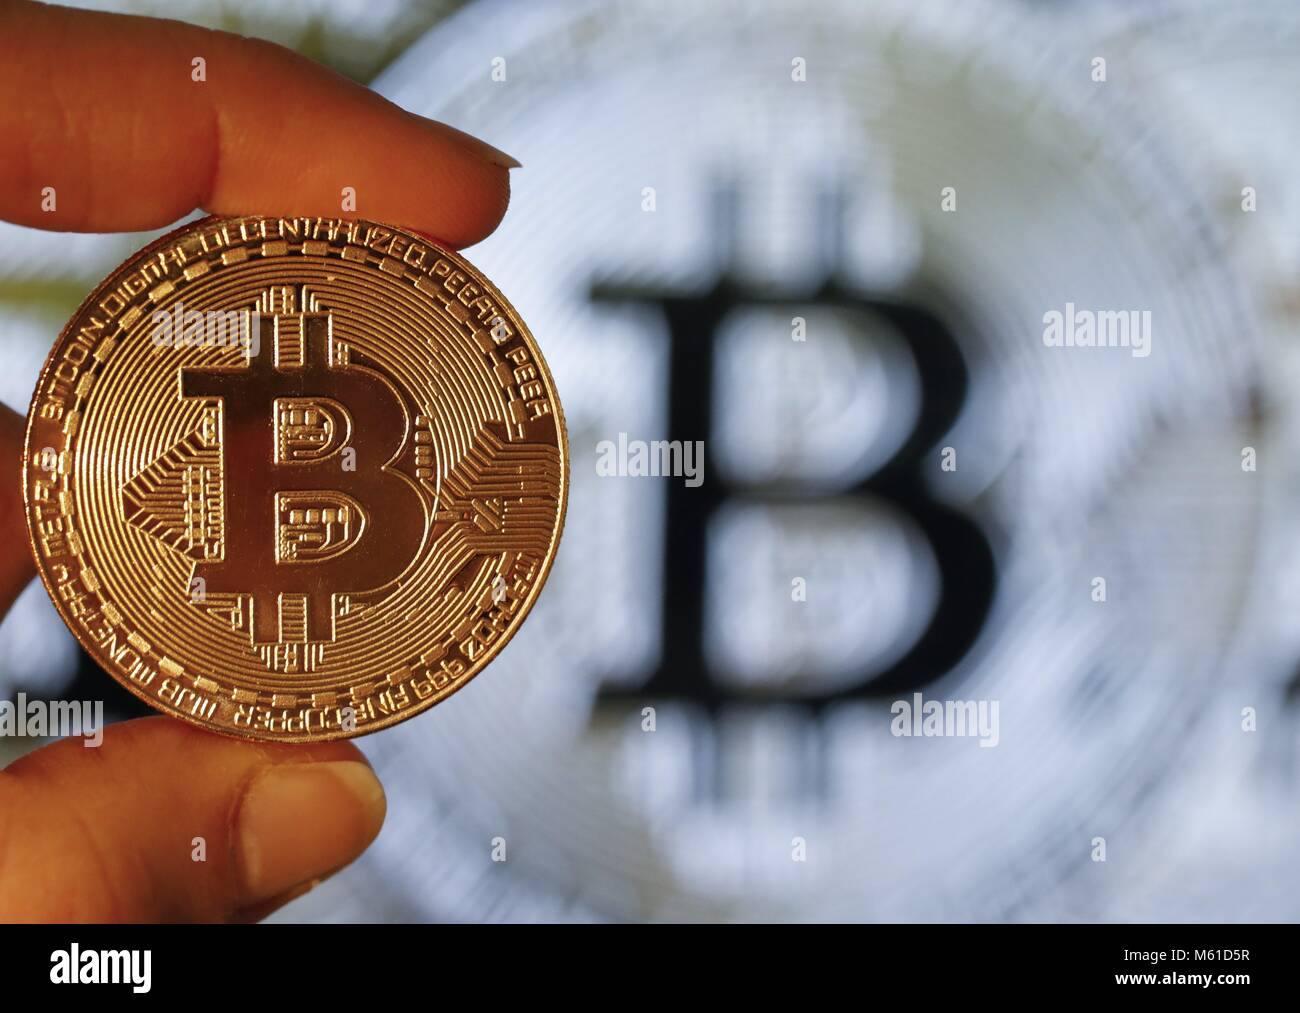 Une photo, l'illustration montre une représentation visuelle de l'cryptocurrency, Bitcoin,11 février 2018. ATTENTION : Prix Minimum EUR 30,00 | conditions dans le monde entier Banque D'Images